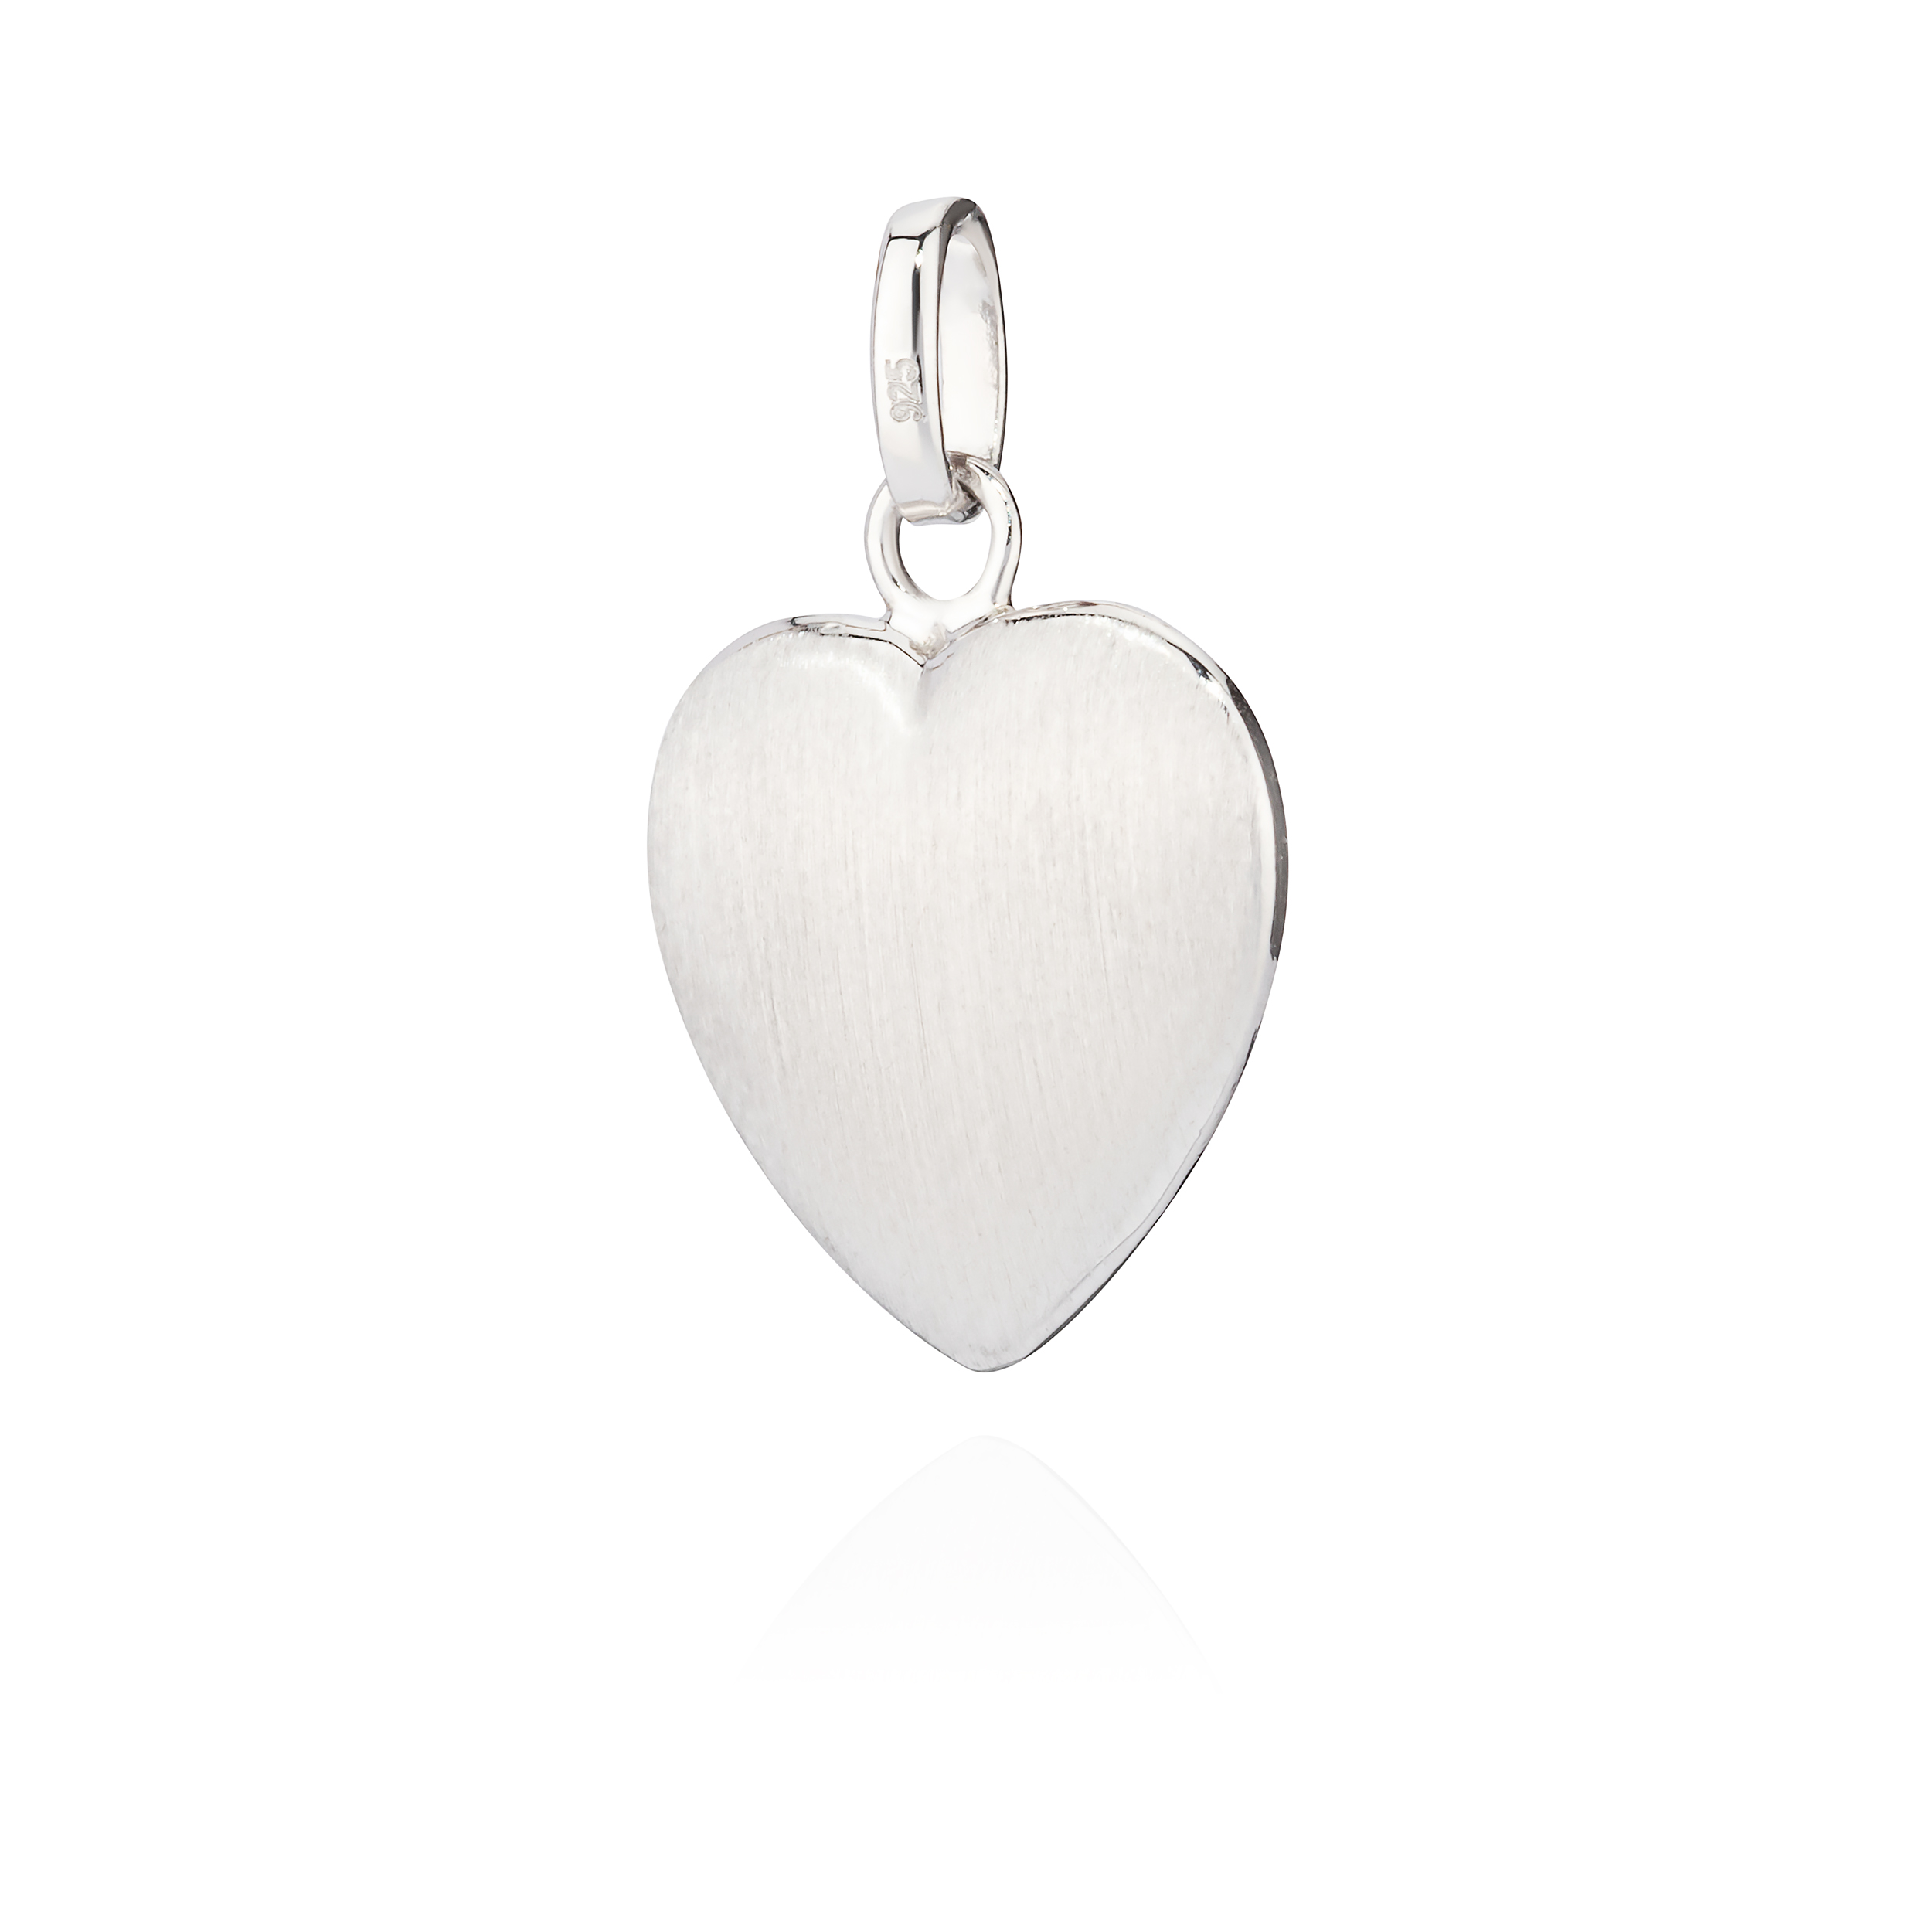 Kettenanhänger kleines Herz 925 Silber glanz-matt anlaufgeschützt Amulett |  eBay